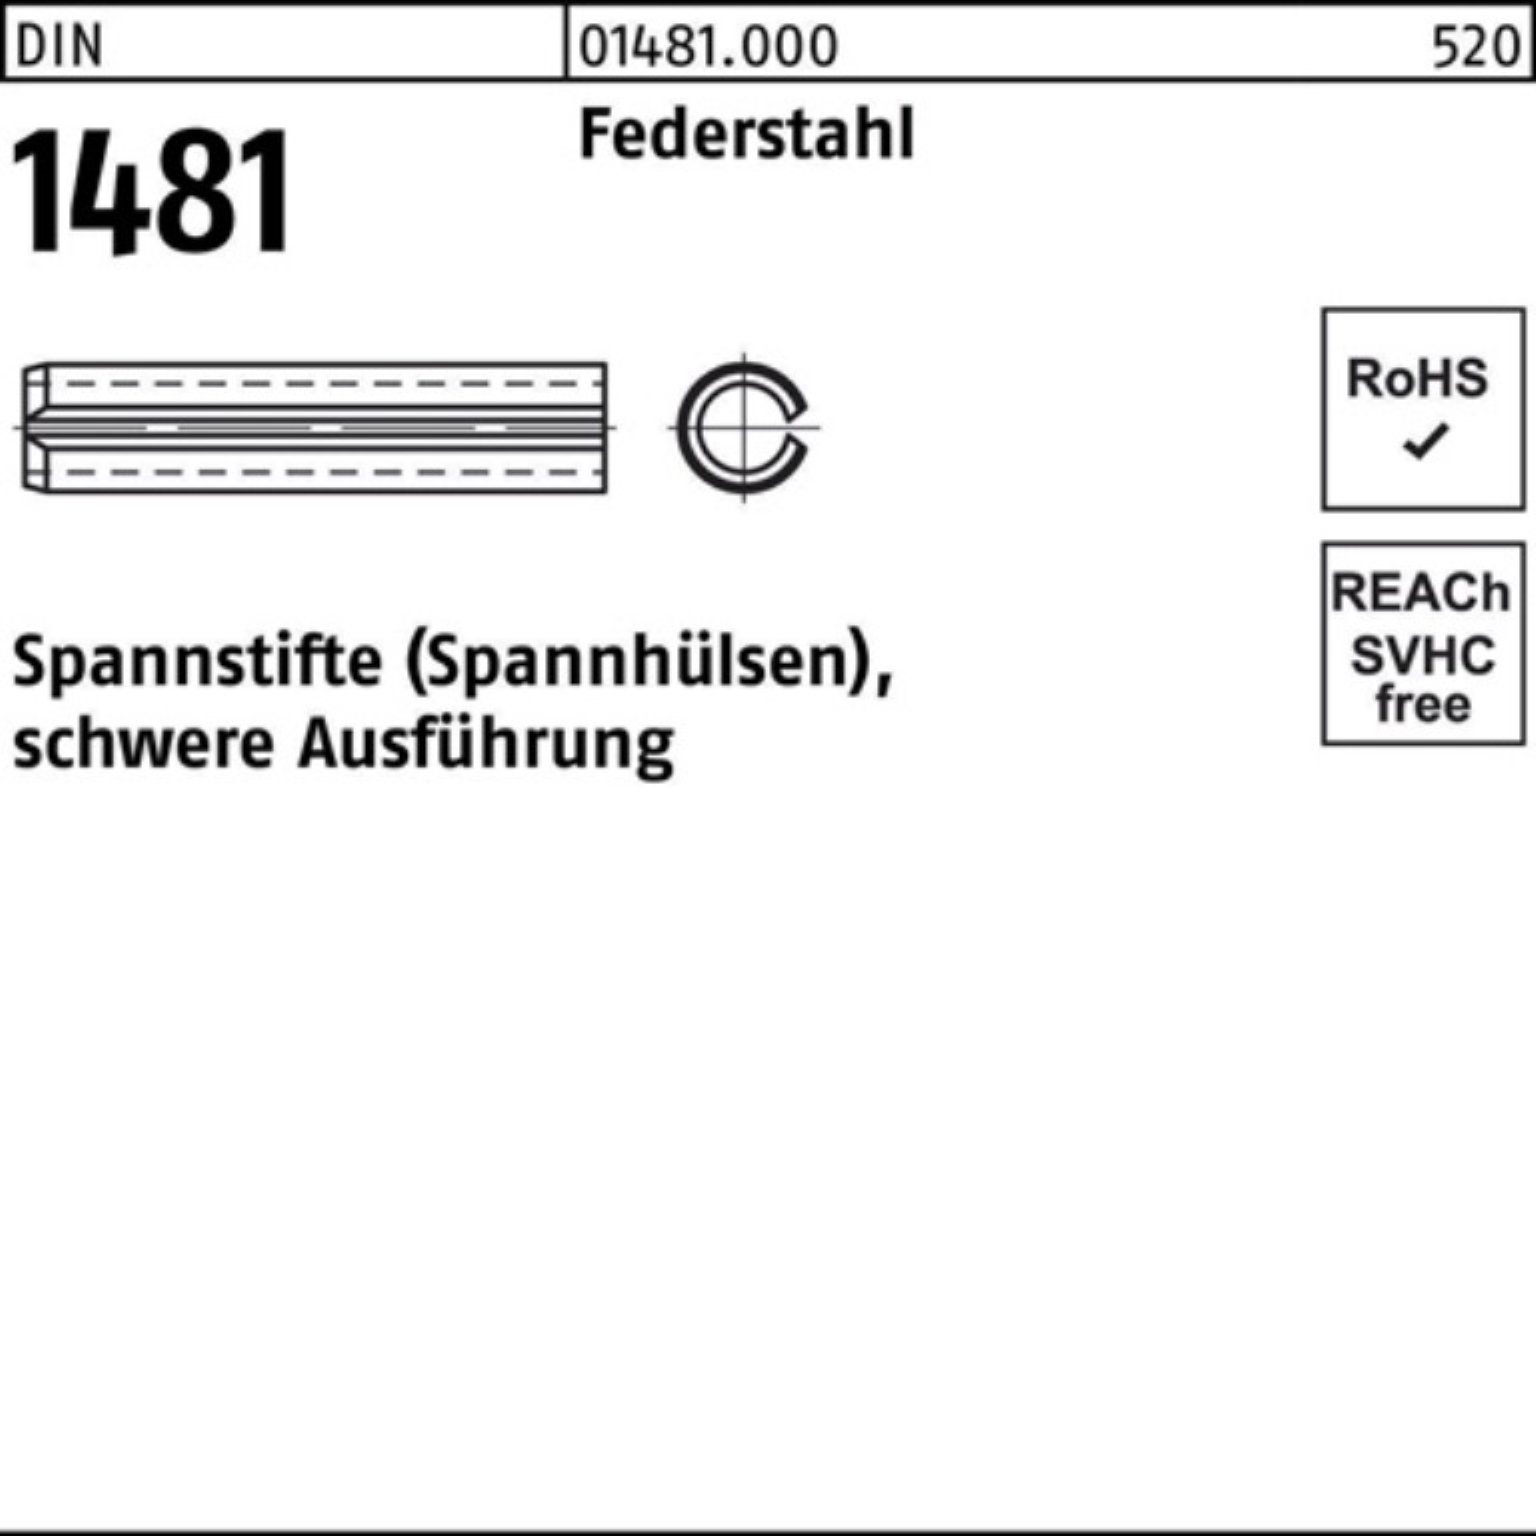 Reyher Spannstift schwere Ausführung 60 100er Federstahl DIN 18x 1481 2 Spannstift Pack